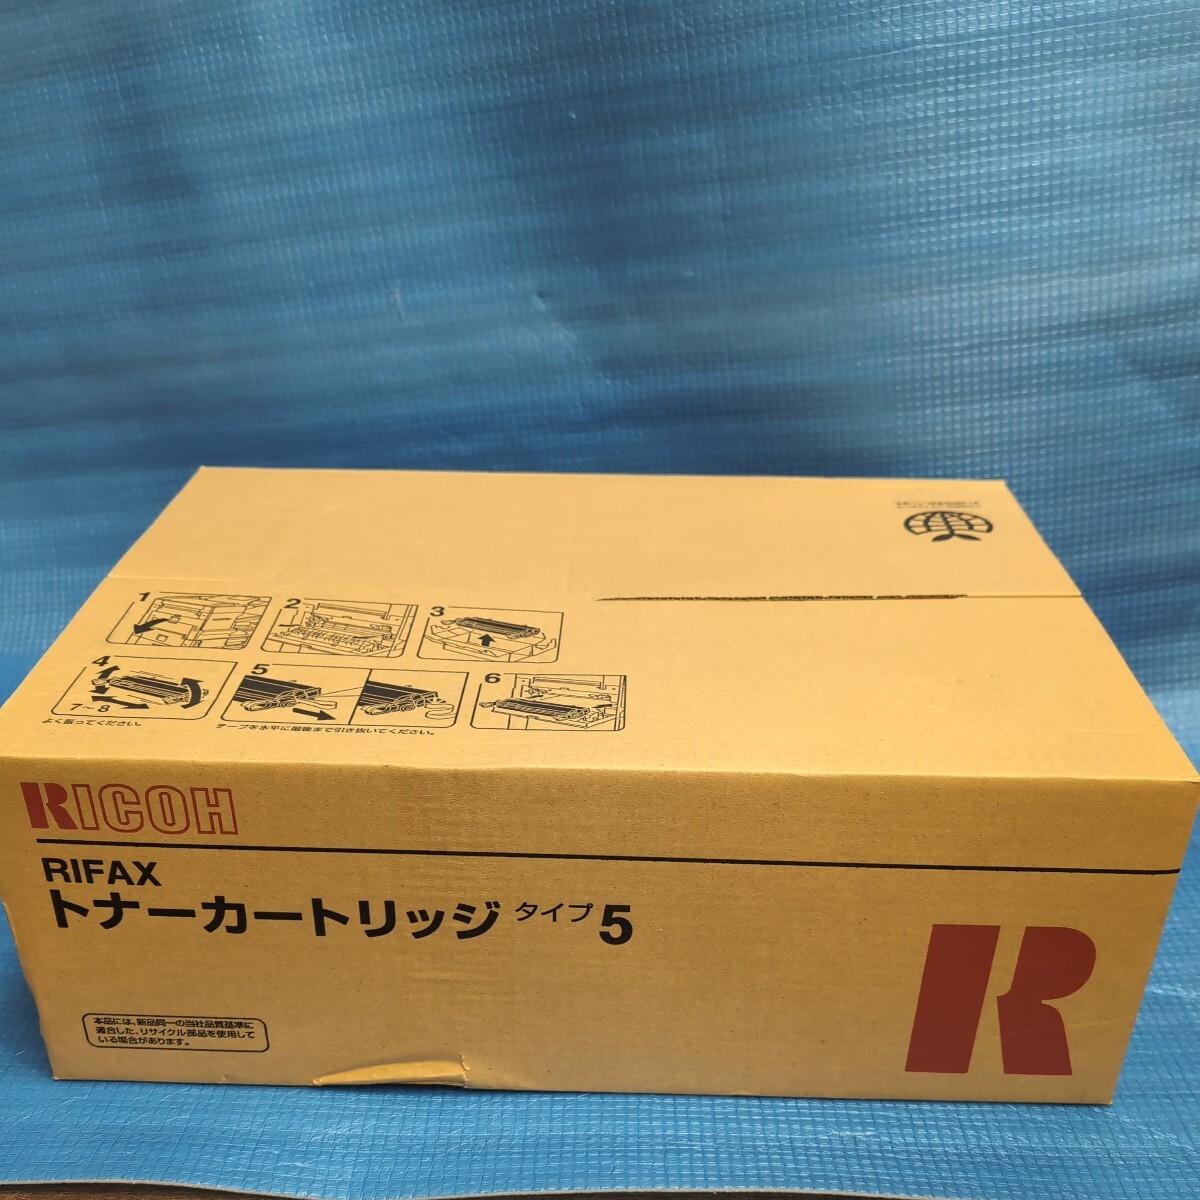 RICOH RIFAX トナーカートリッジ タイプ5 リファックス 614605 純正品